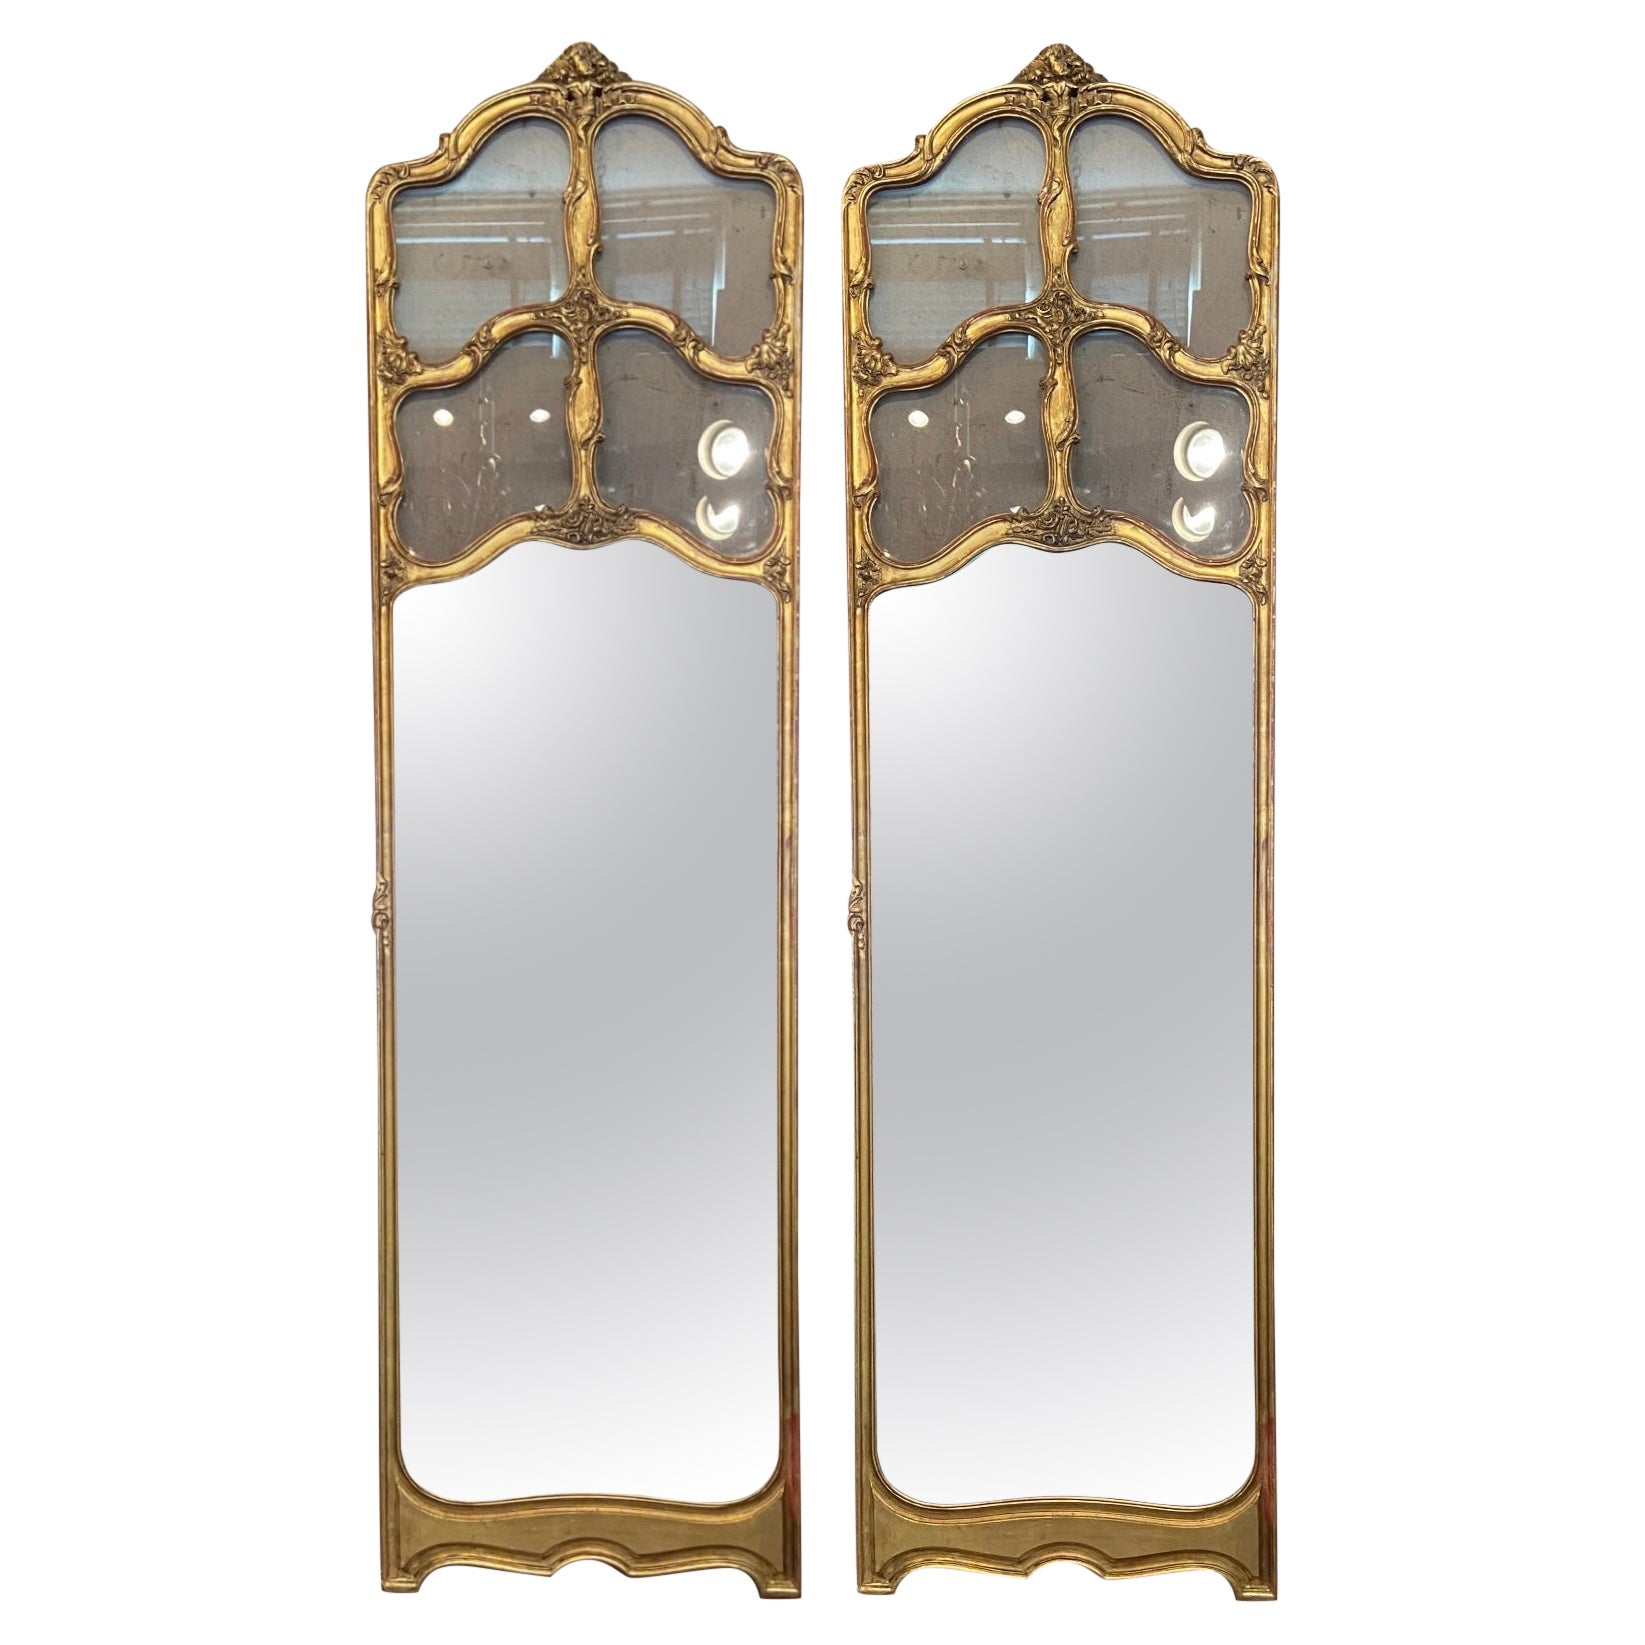 Paire de miroirs français anciens du 19ème siècle sculptés en feuilles d'or